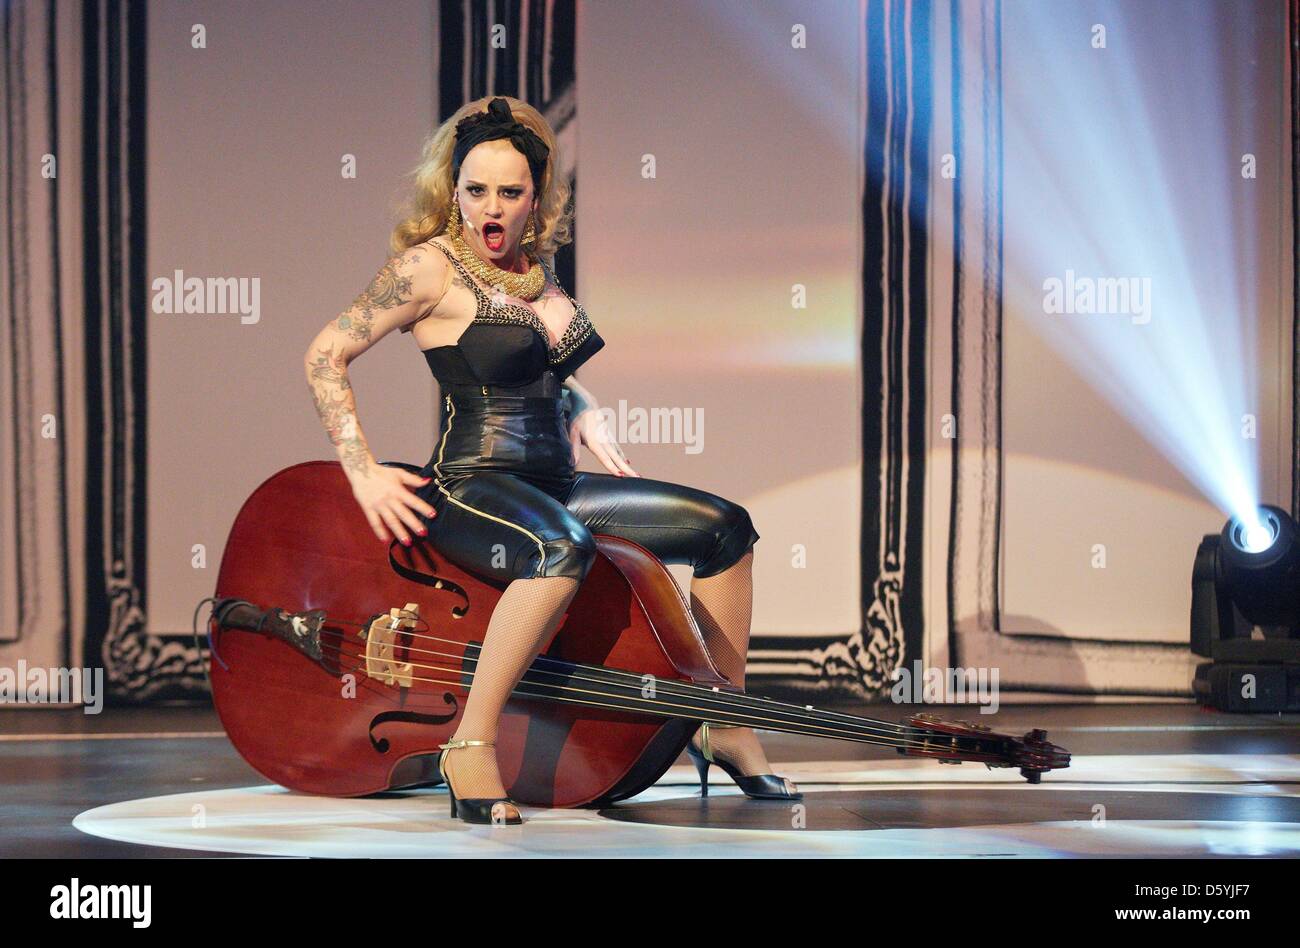 Le Sinderellas' Belle la Donna pose lors d'un photocall pour leur spectacle burlesque 'Secrets et péchés' dans Hamburgg à Gruenspan, Allemagne, 27 octobre 2012. Photo : GEORG WENDT Banque D'Images